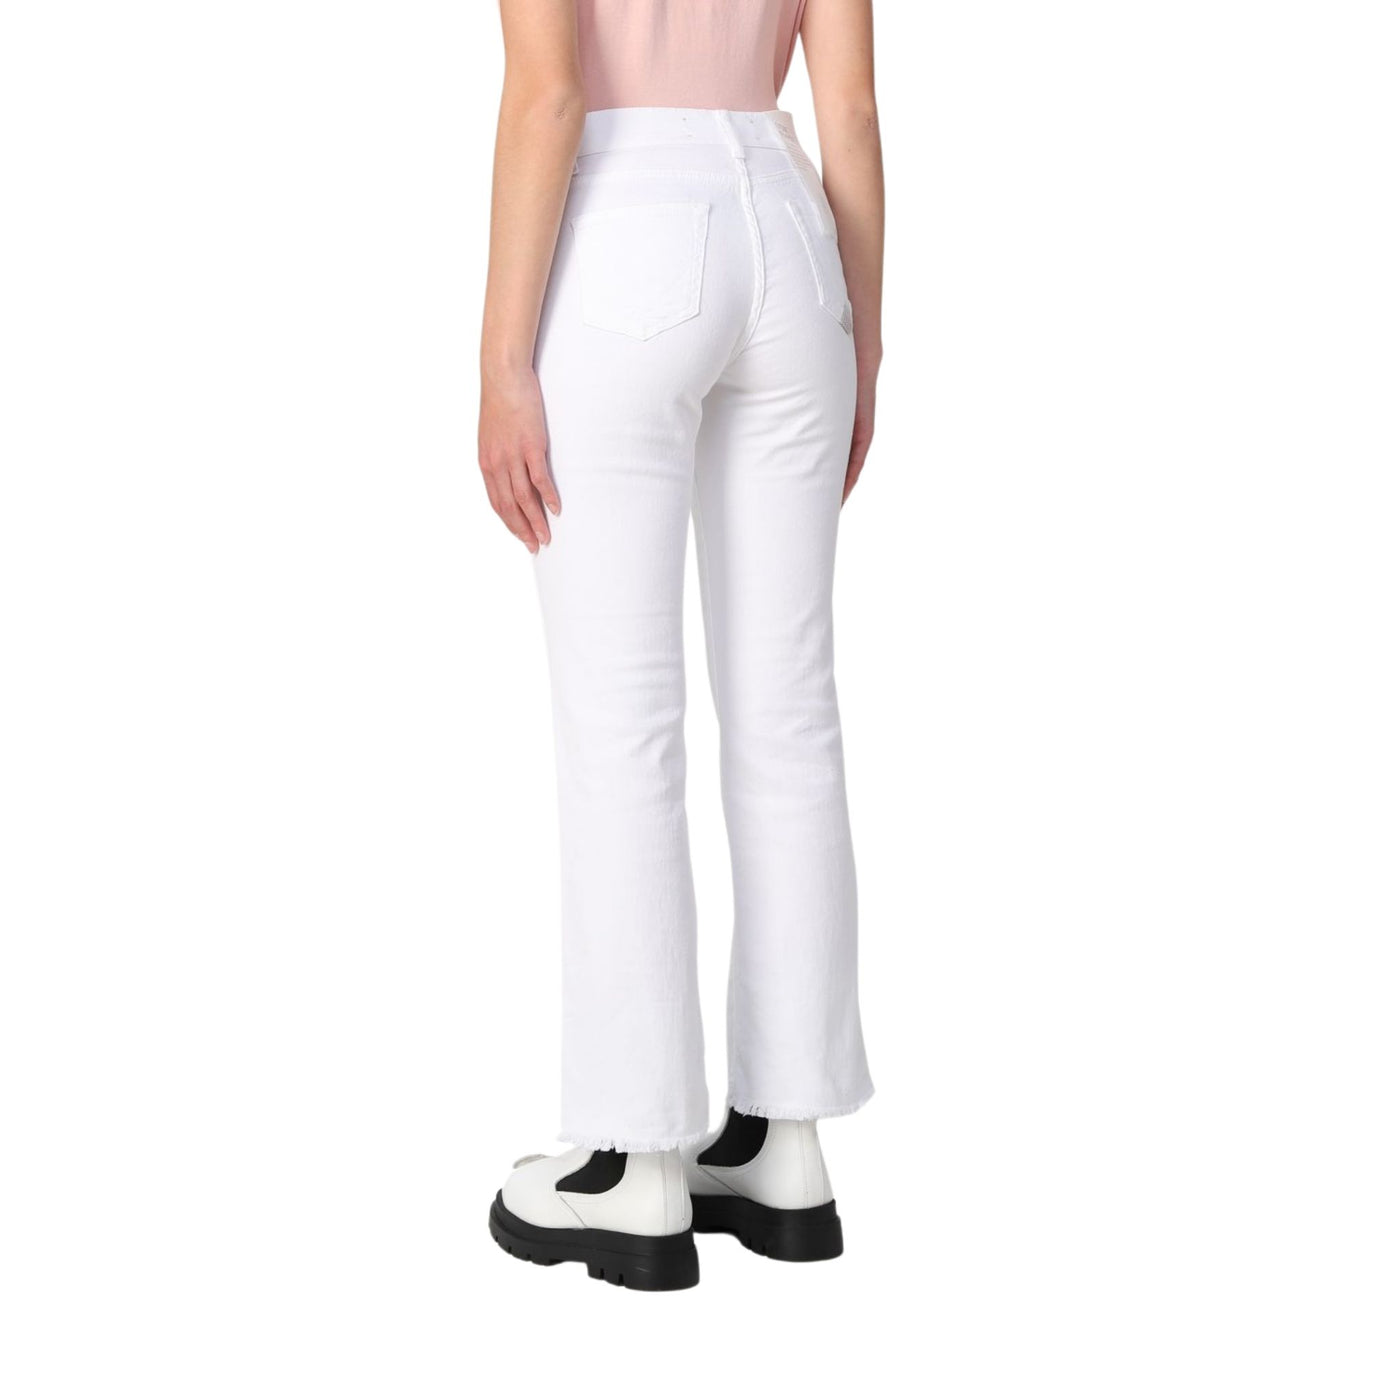 Jeans da donna bianco firmati Roy Roger's su modella vista retro